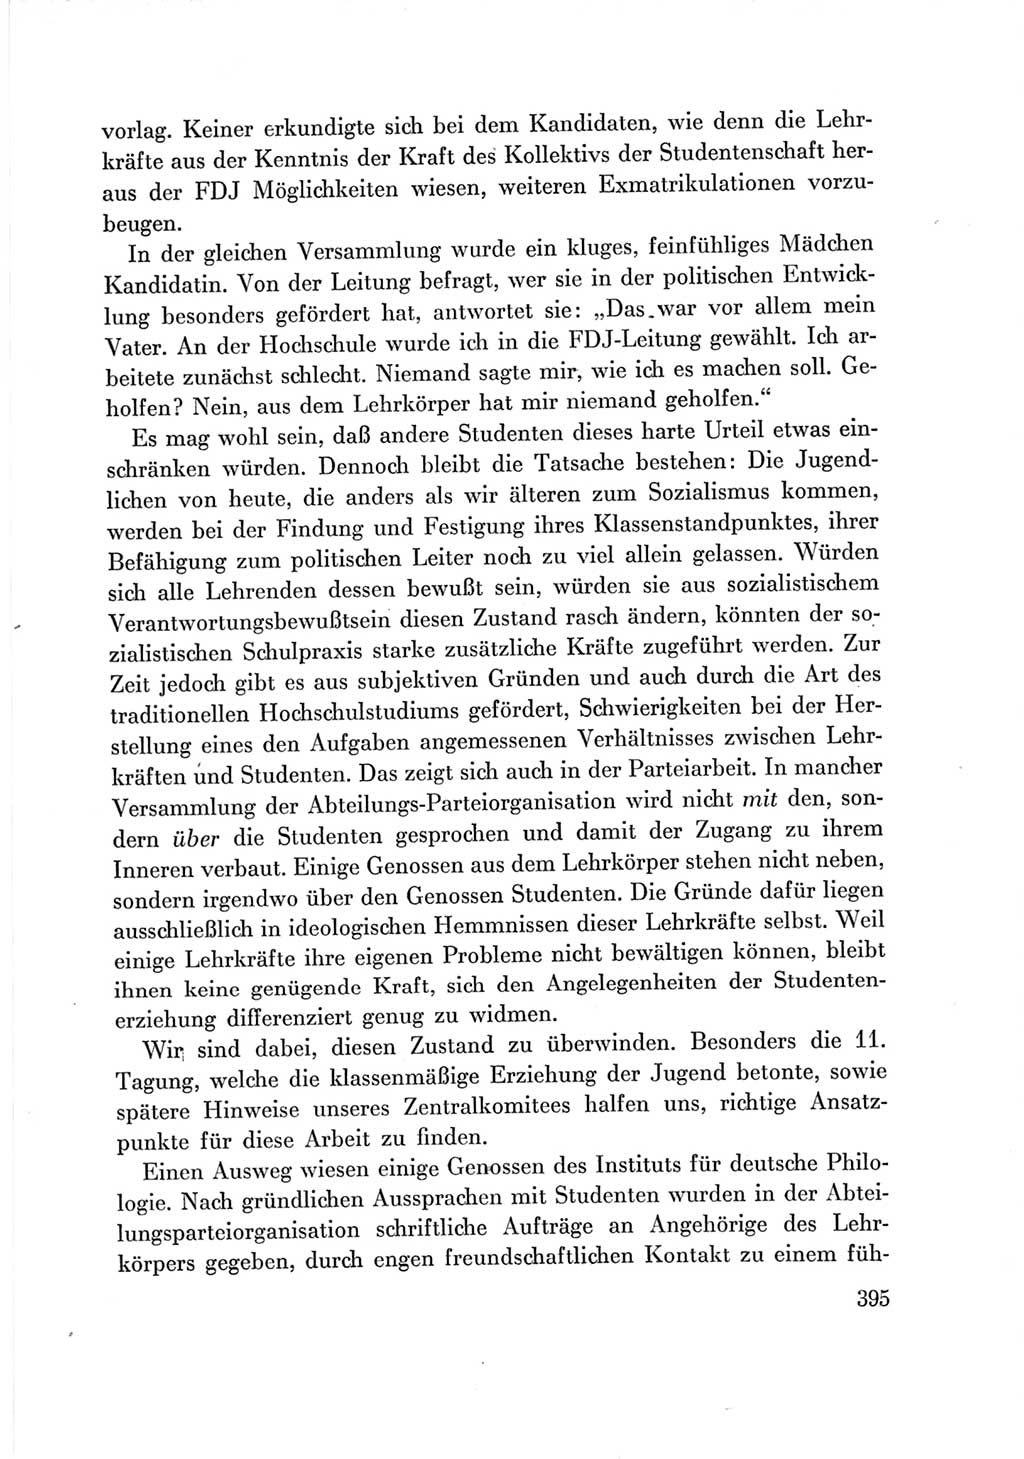 Protokoll der Verhandlungen des Ⅶ. Parteitages der Sozialistischen Einheitspartei Deutschlands (SED) [Deutsche Demokratische Republik (DDR)] 1967, Band Ⅲ, Seite 395 (Prot. Verh. Ⅶ. PT SED DDR 1967, Bd. Ⅲ, S. 395)